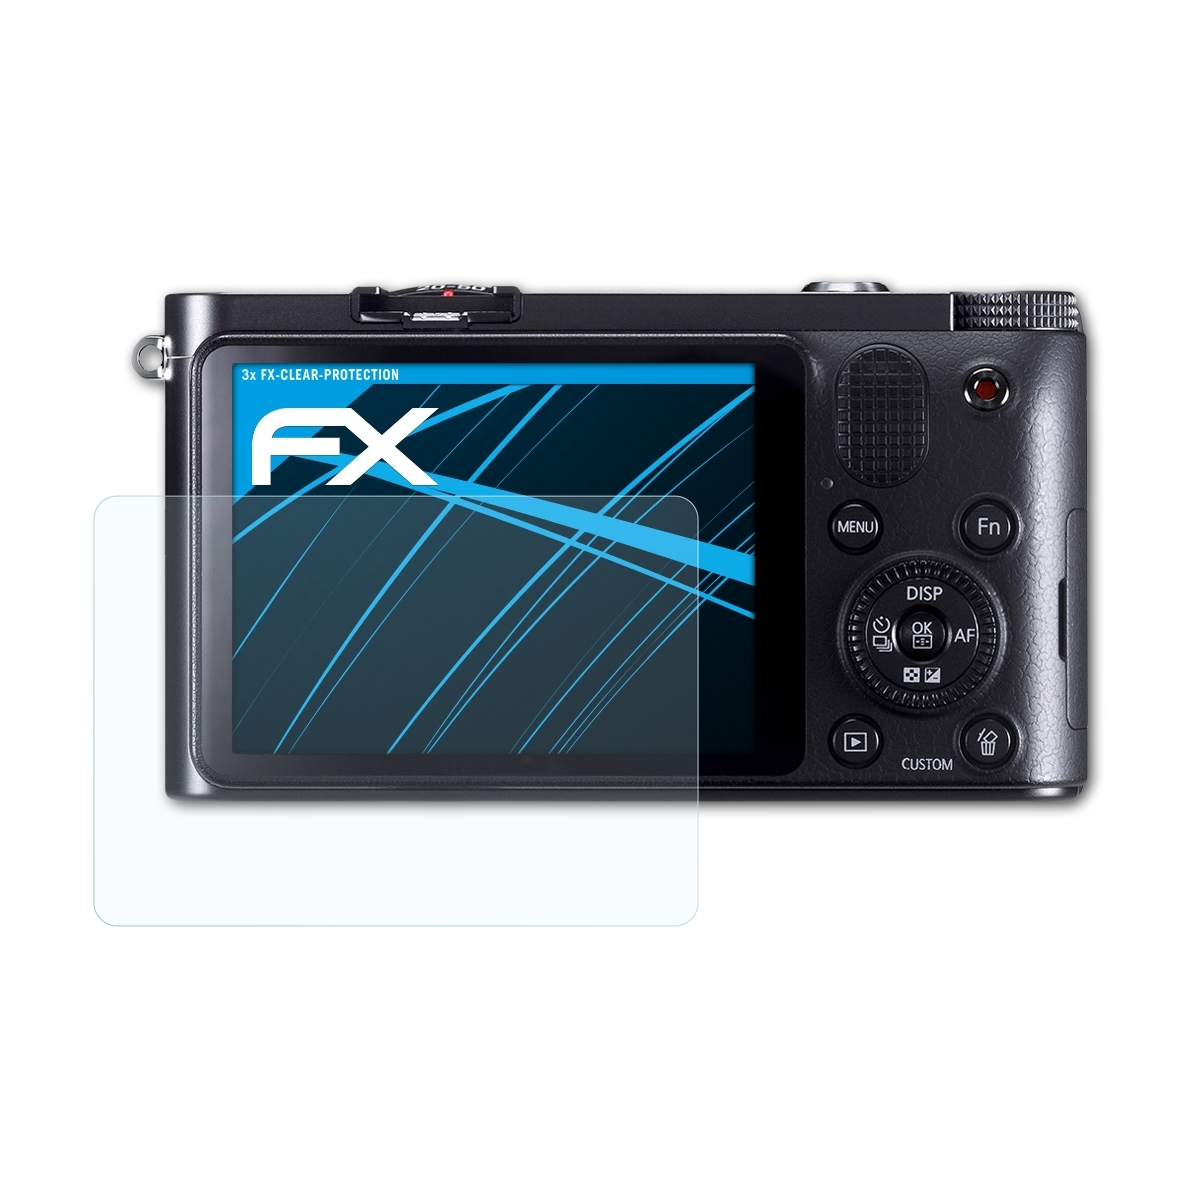 Samsung Displayschutz(für NX1100) FX-Clear 3x ATFOLIX